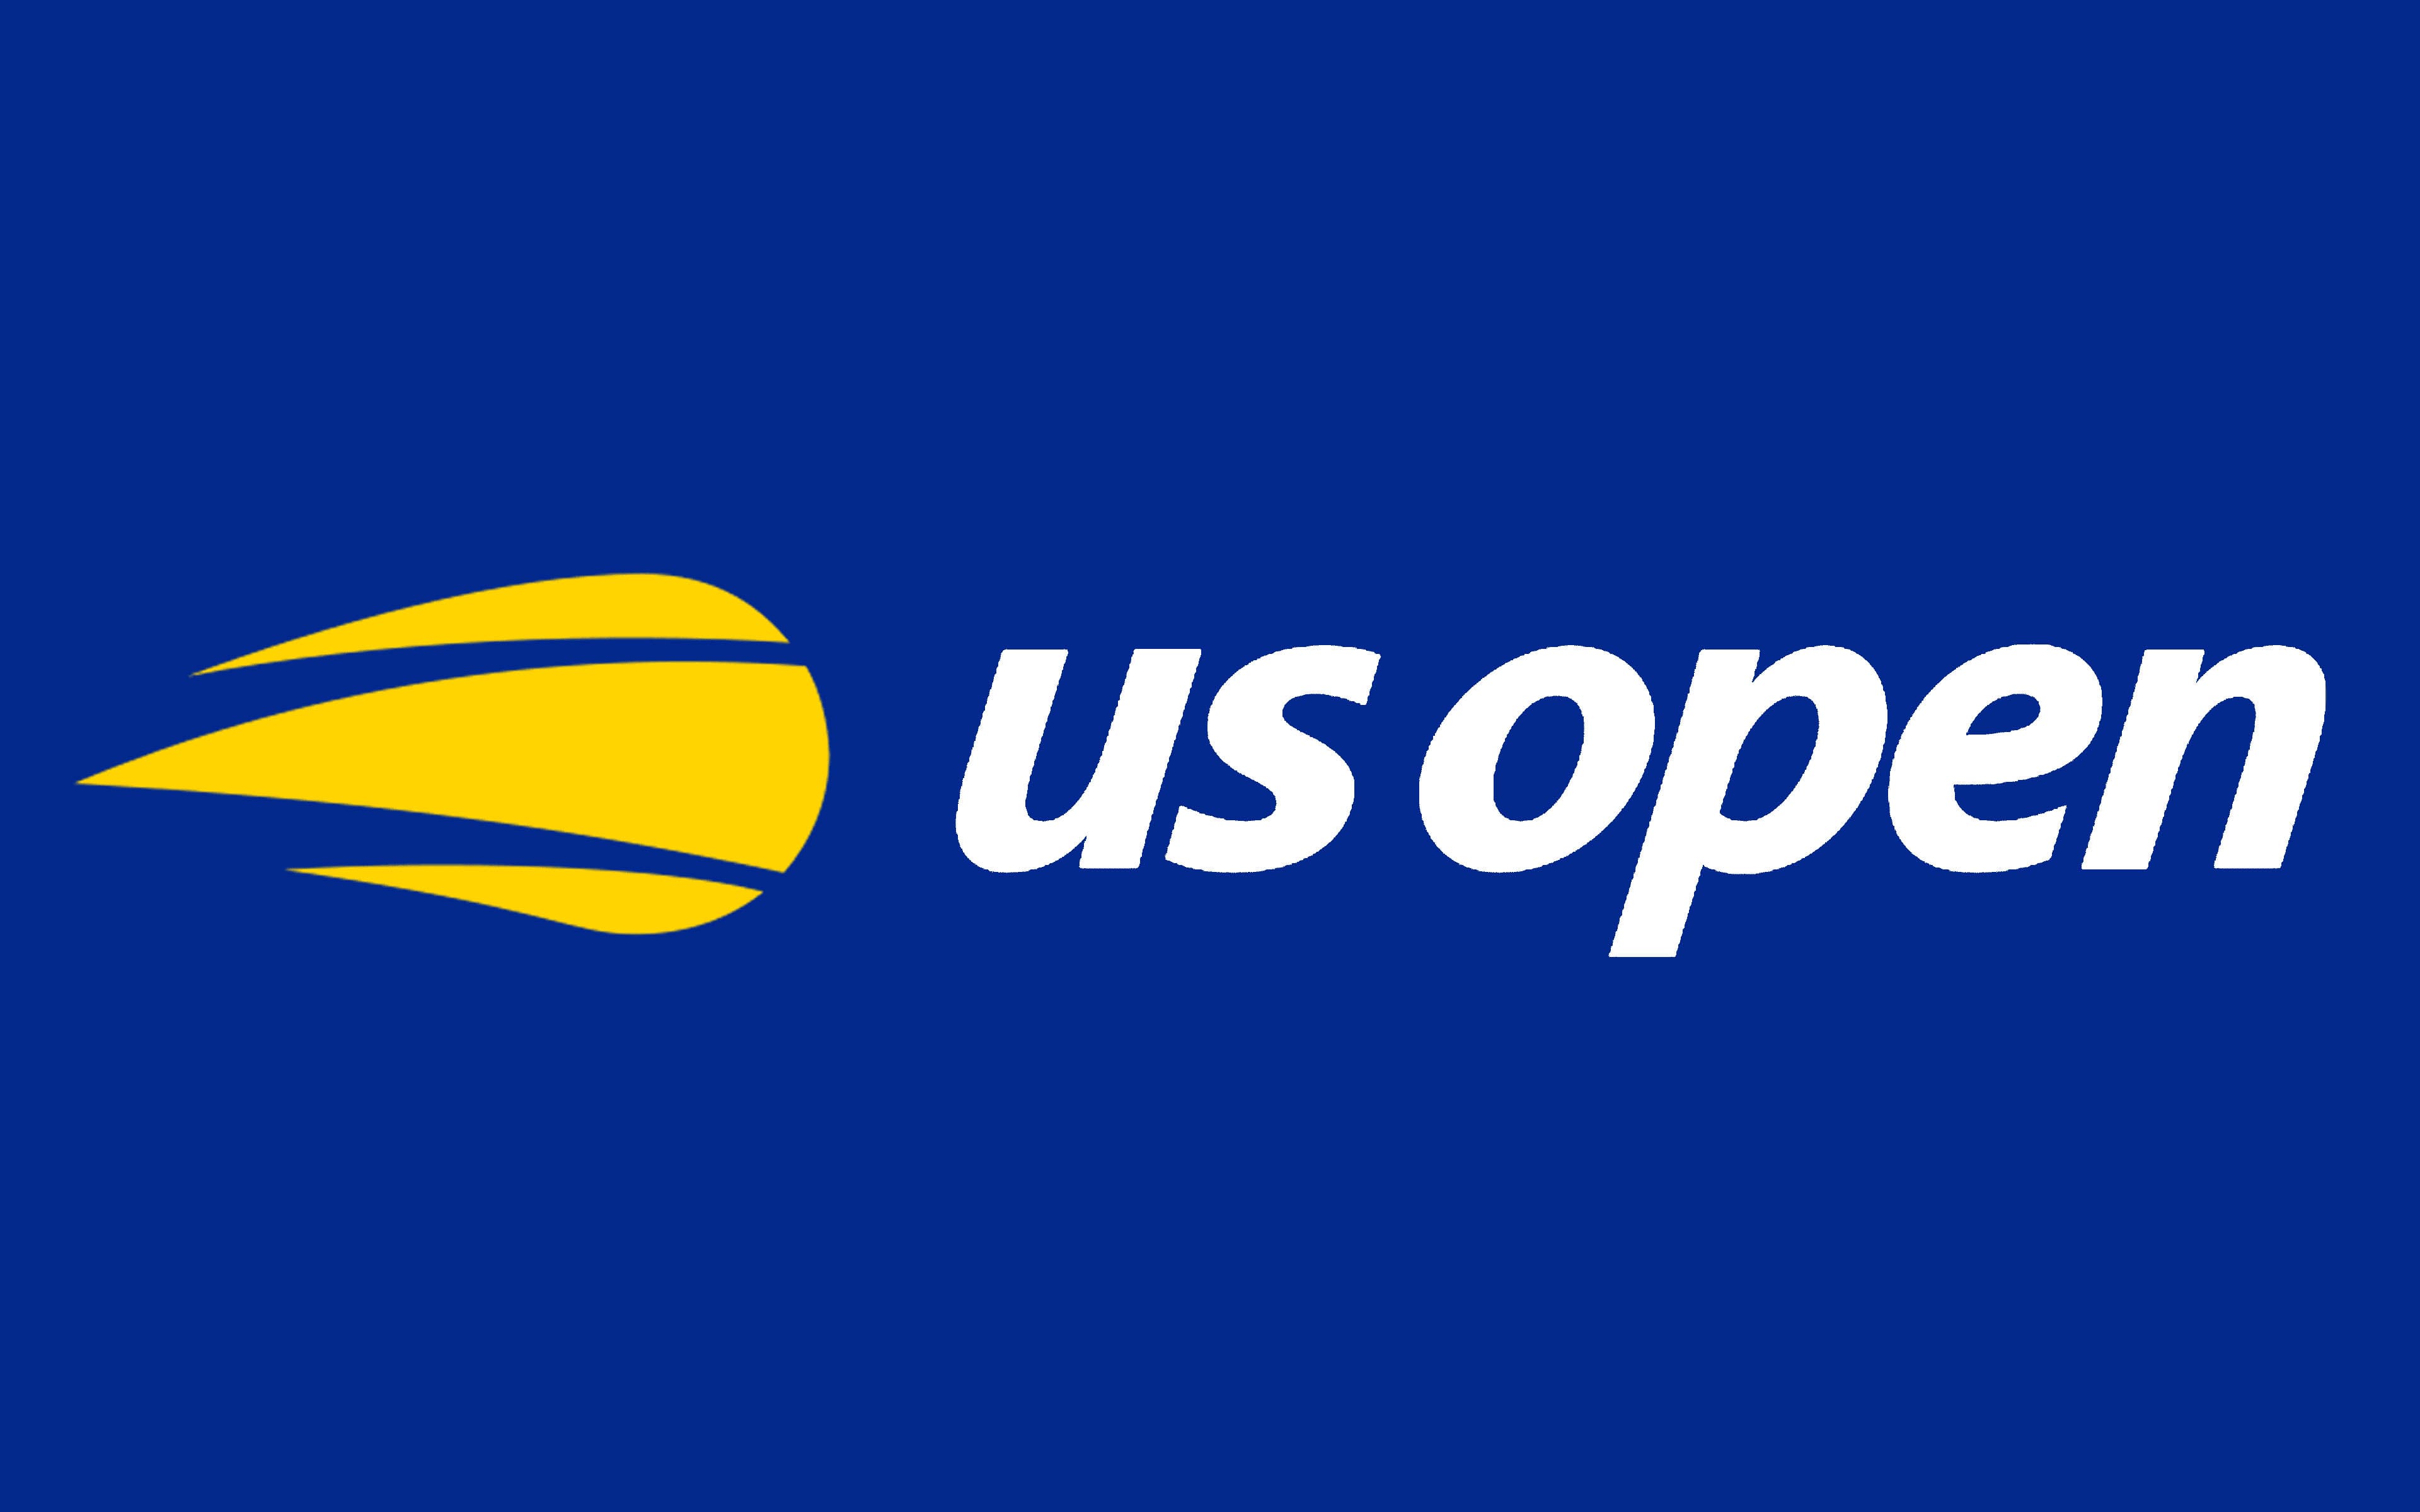 US-OPEN-Emblem.jpg